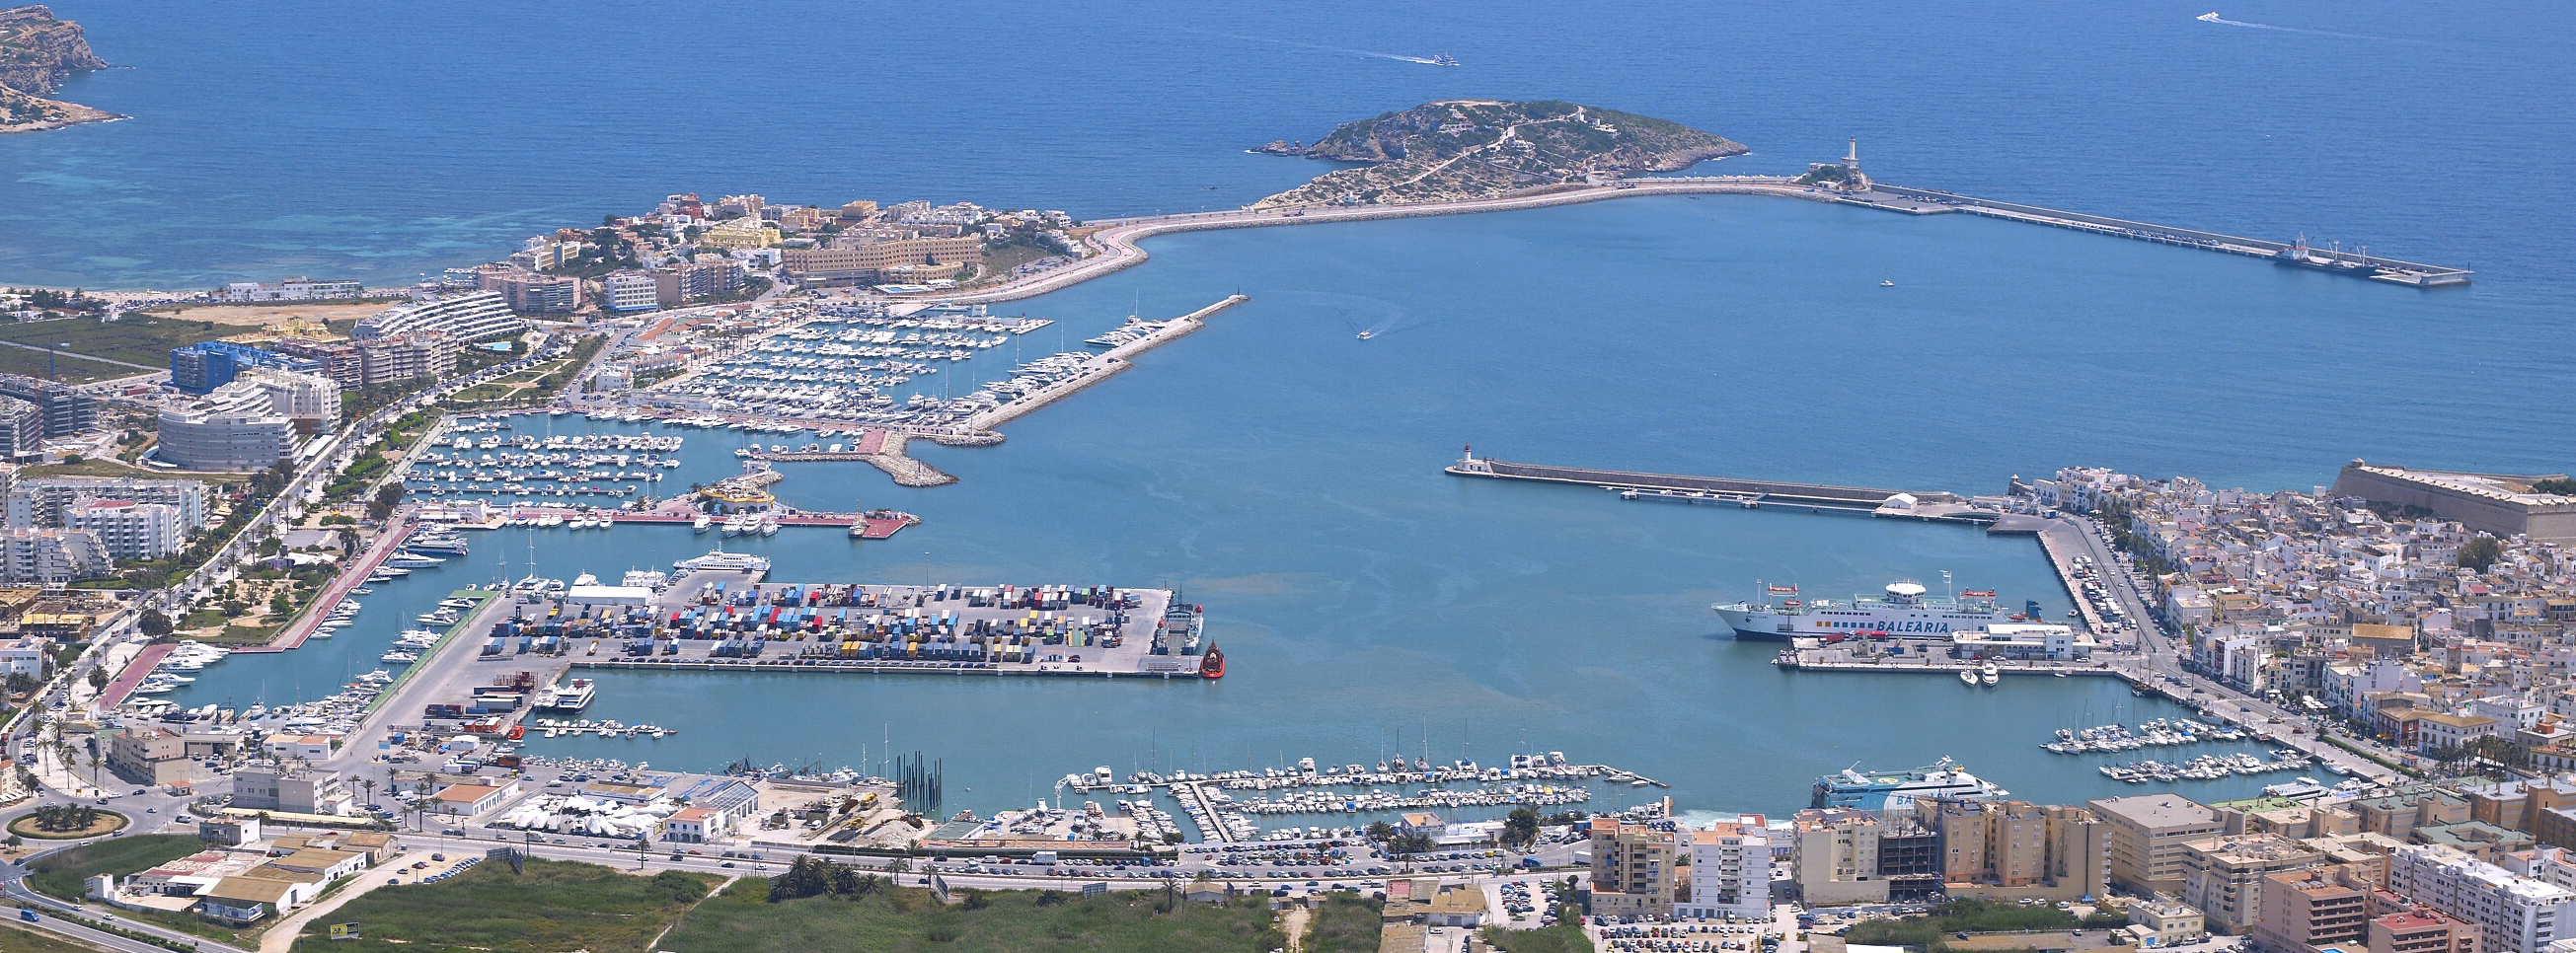 El Consejo de Administración de la APB acuerda sacar a concurso la gestión de las instalaciones que administra el Club Náutico de Ibiza